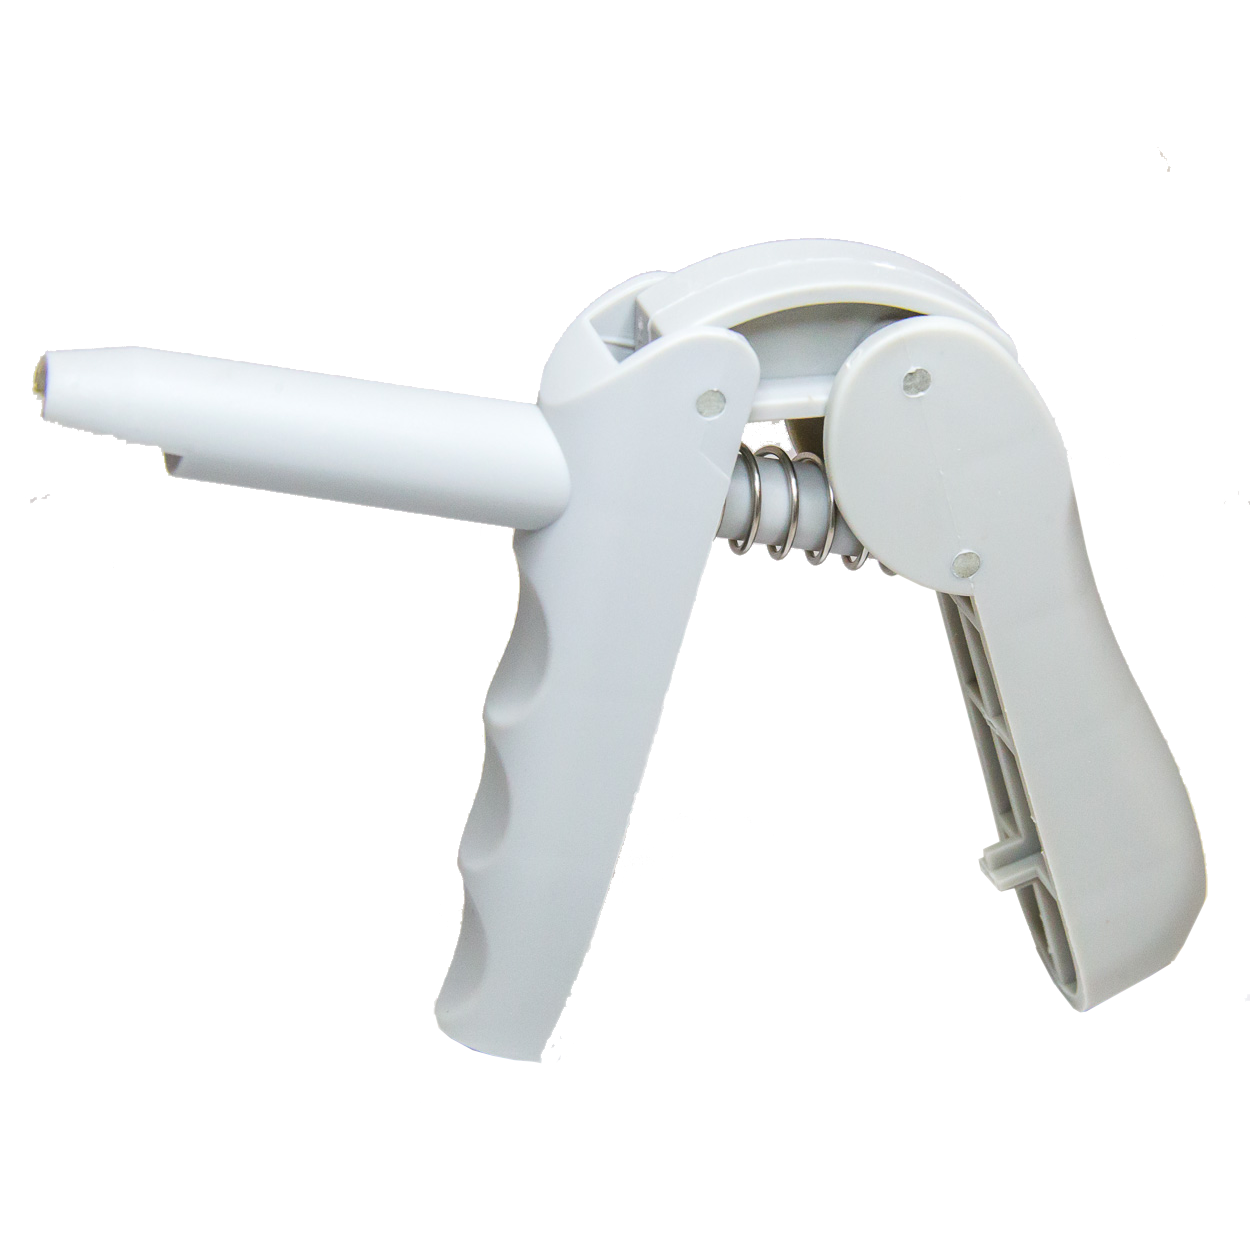 Capsule dispenser gun, 1 pc